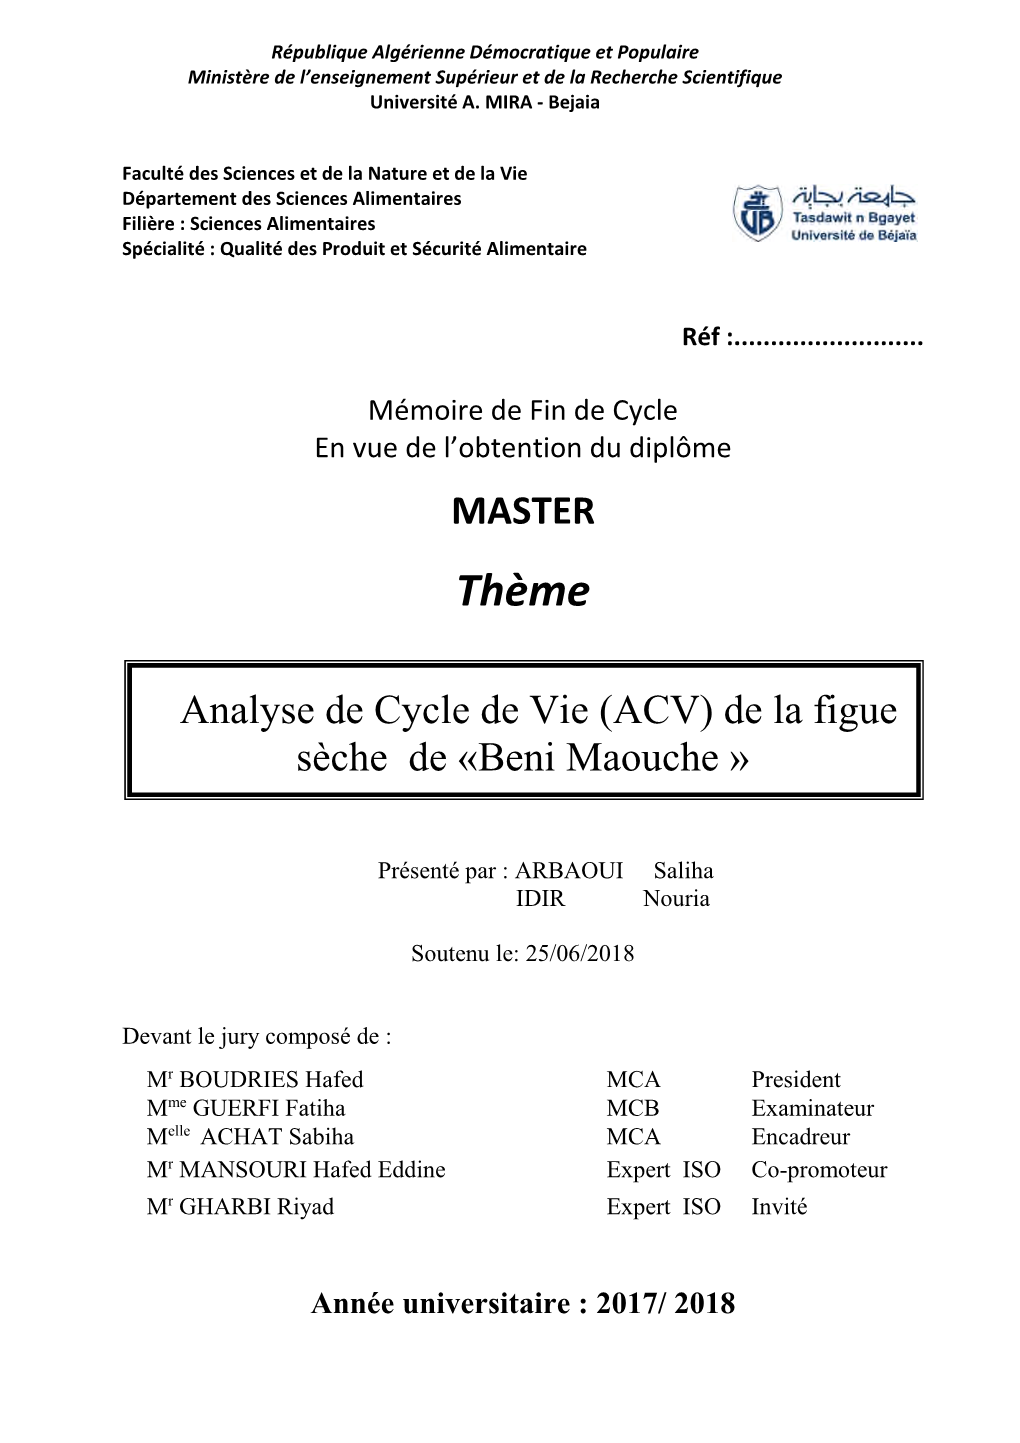 Analyse De Cycle De Vie De La Figue Sèche De Beni Maouche.Pdf